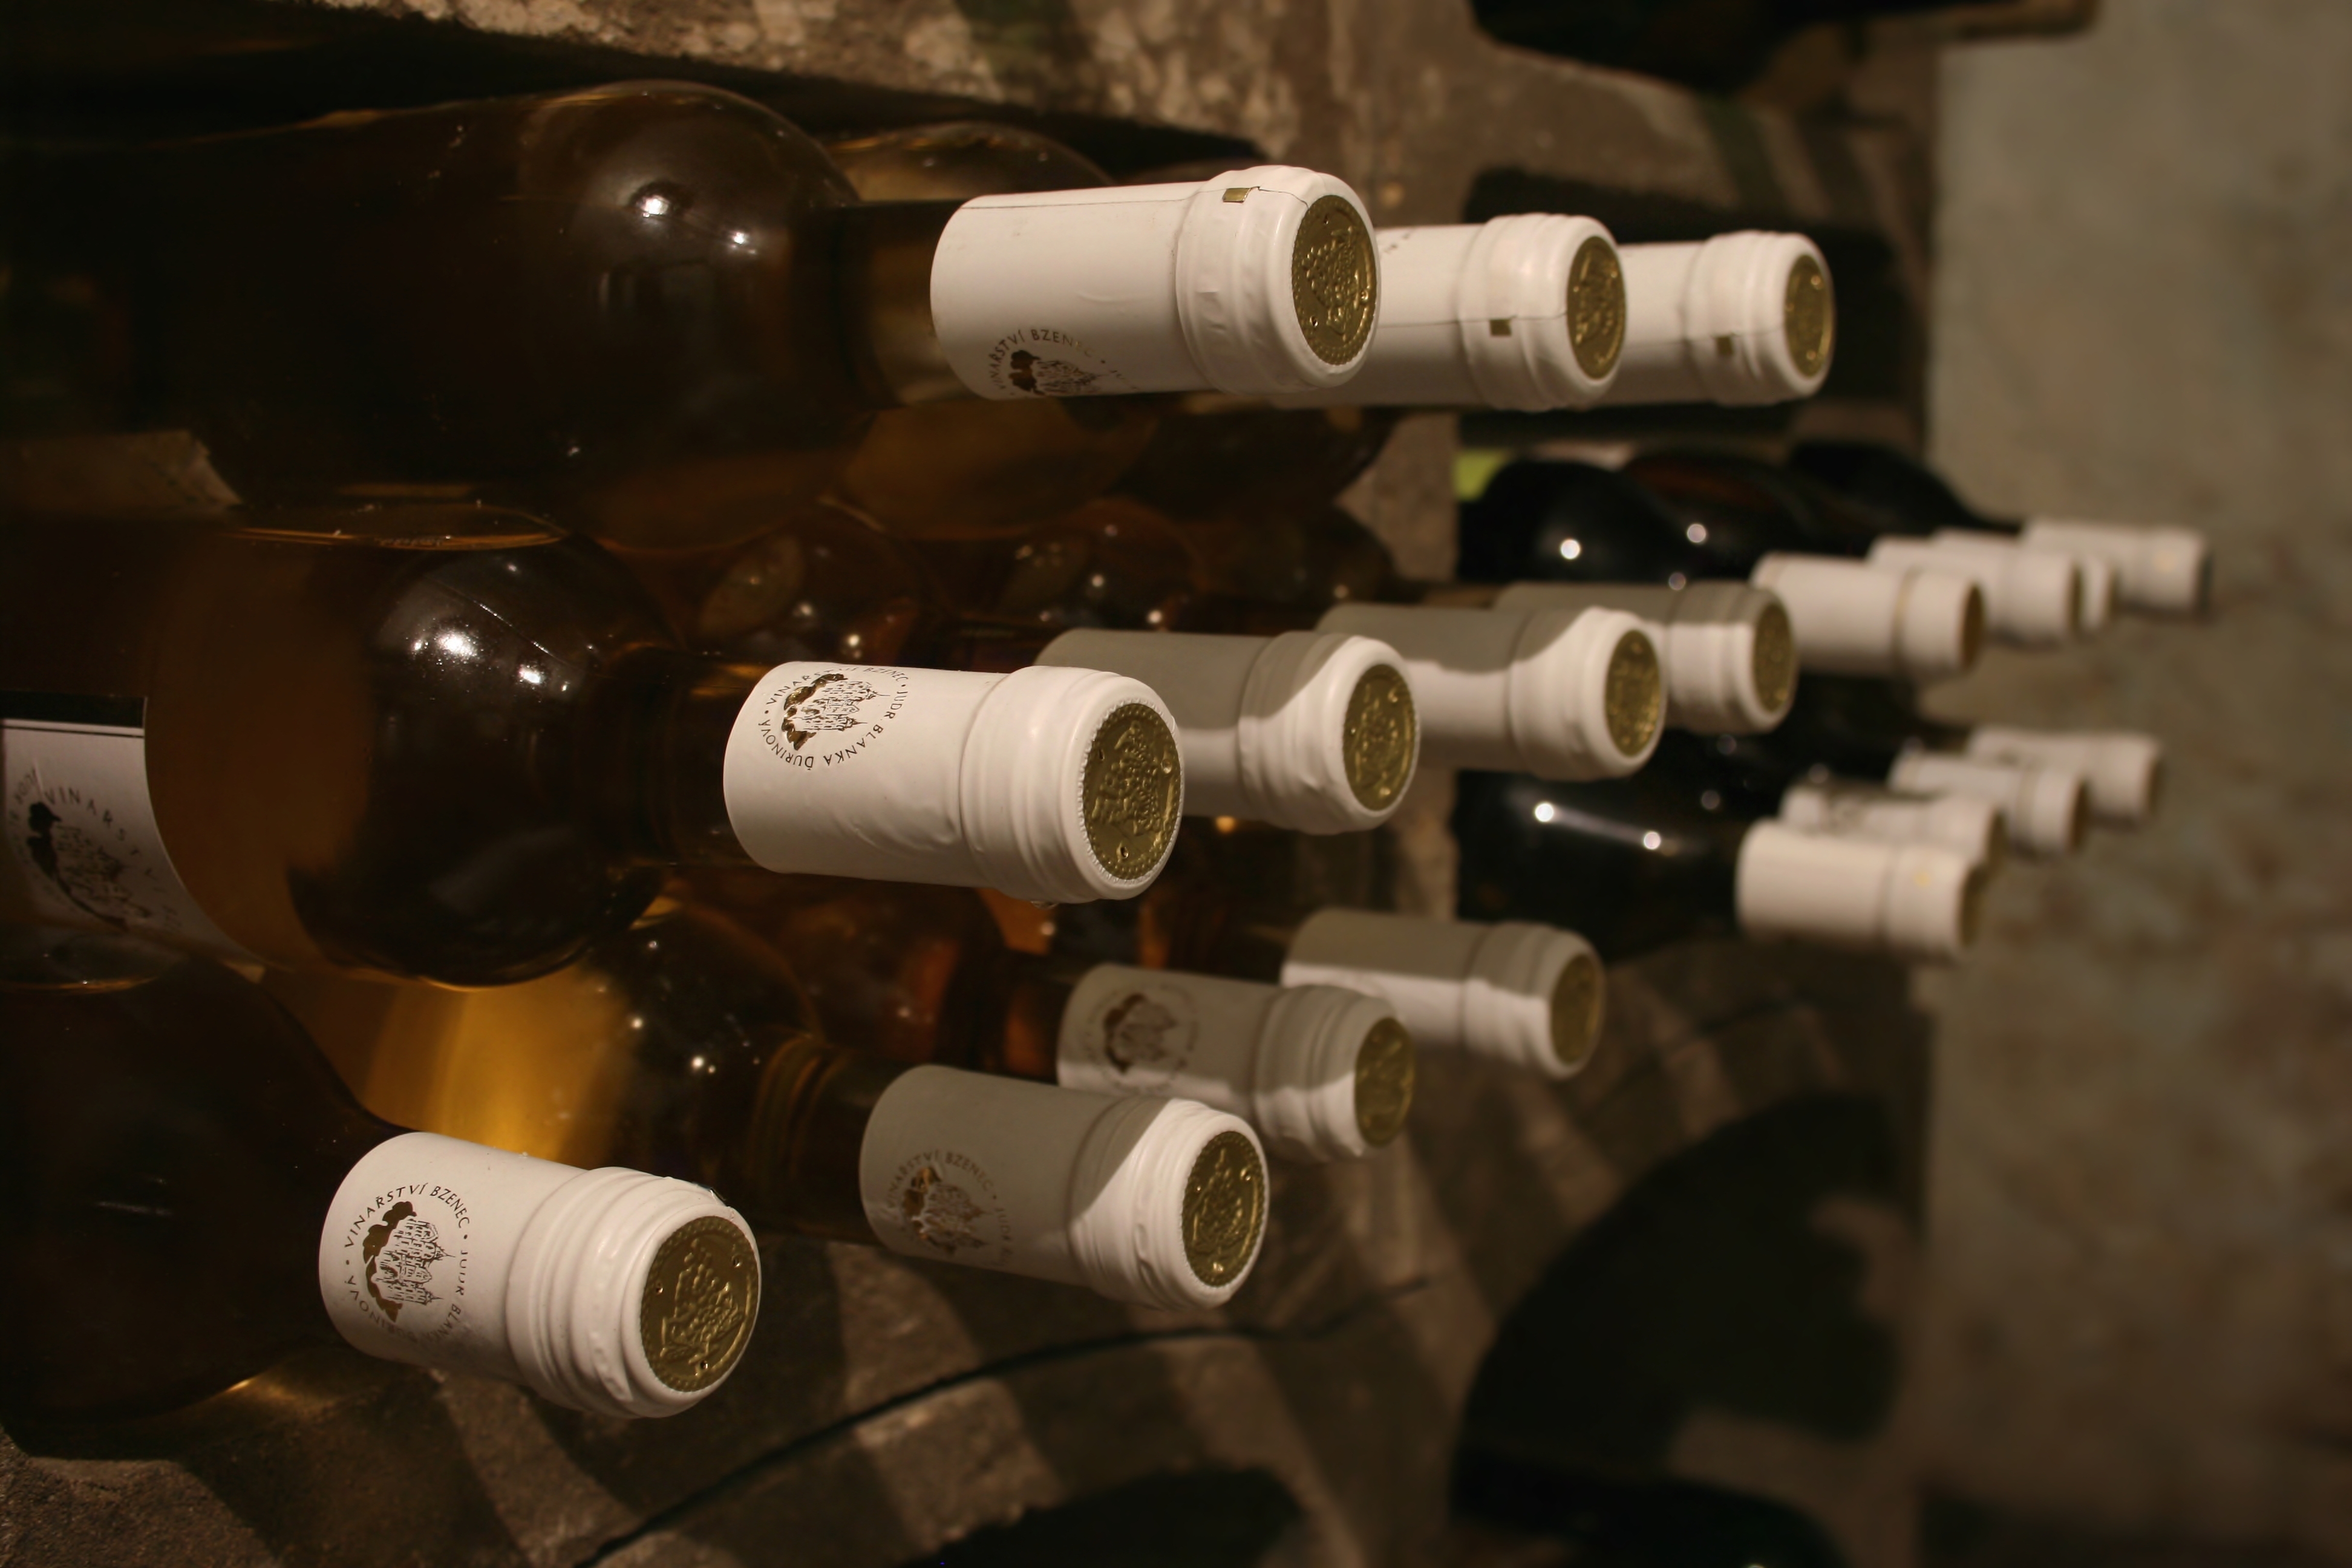 Bottles of wine in wine cellar. | Source: Shutterstock